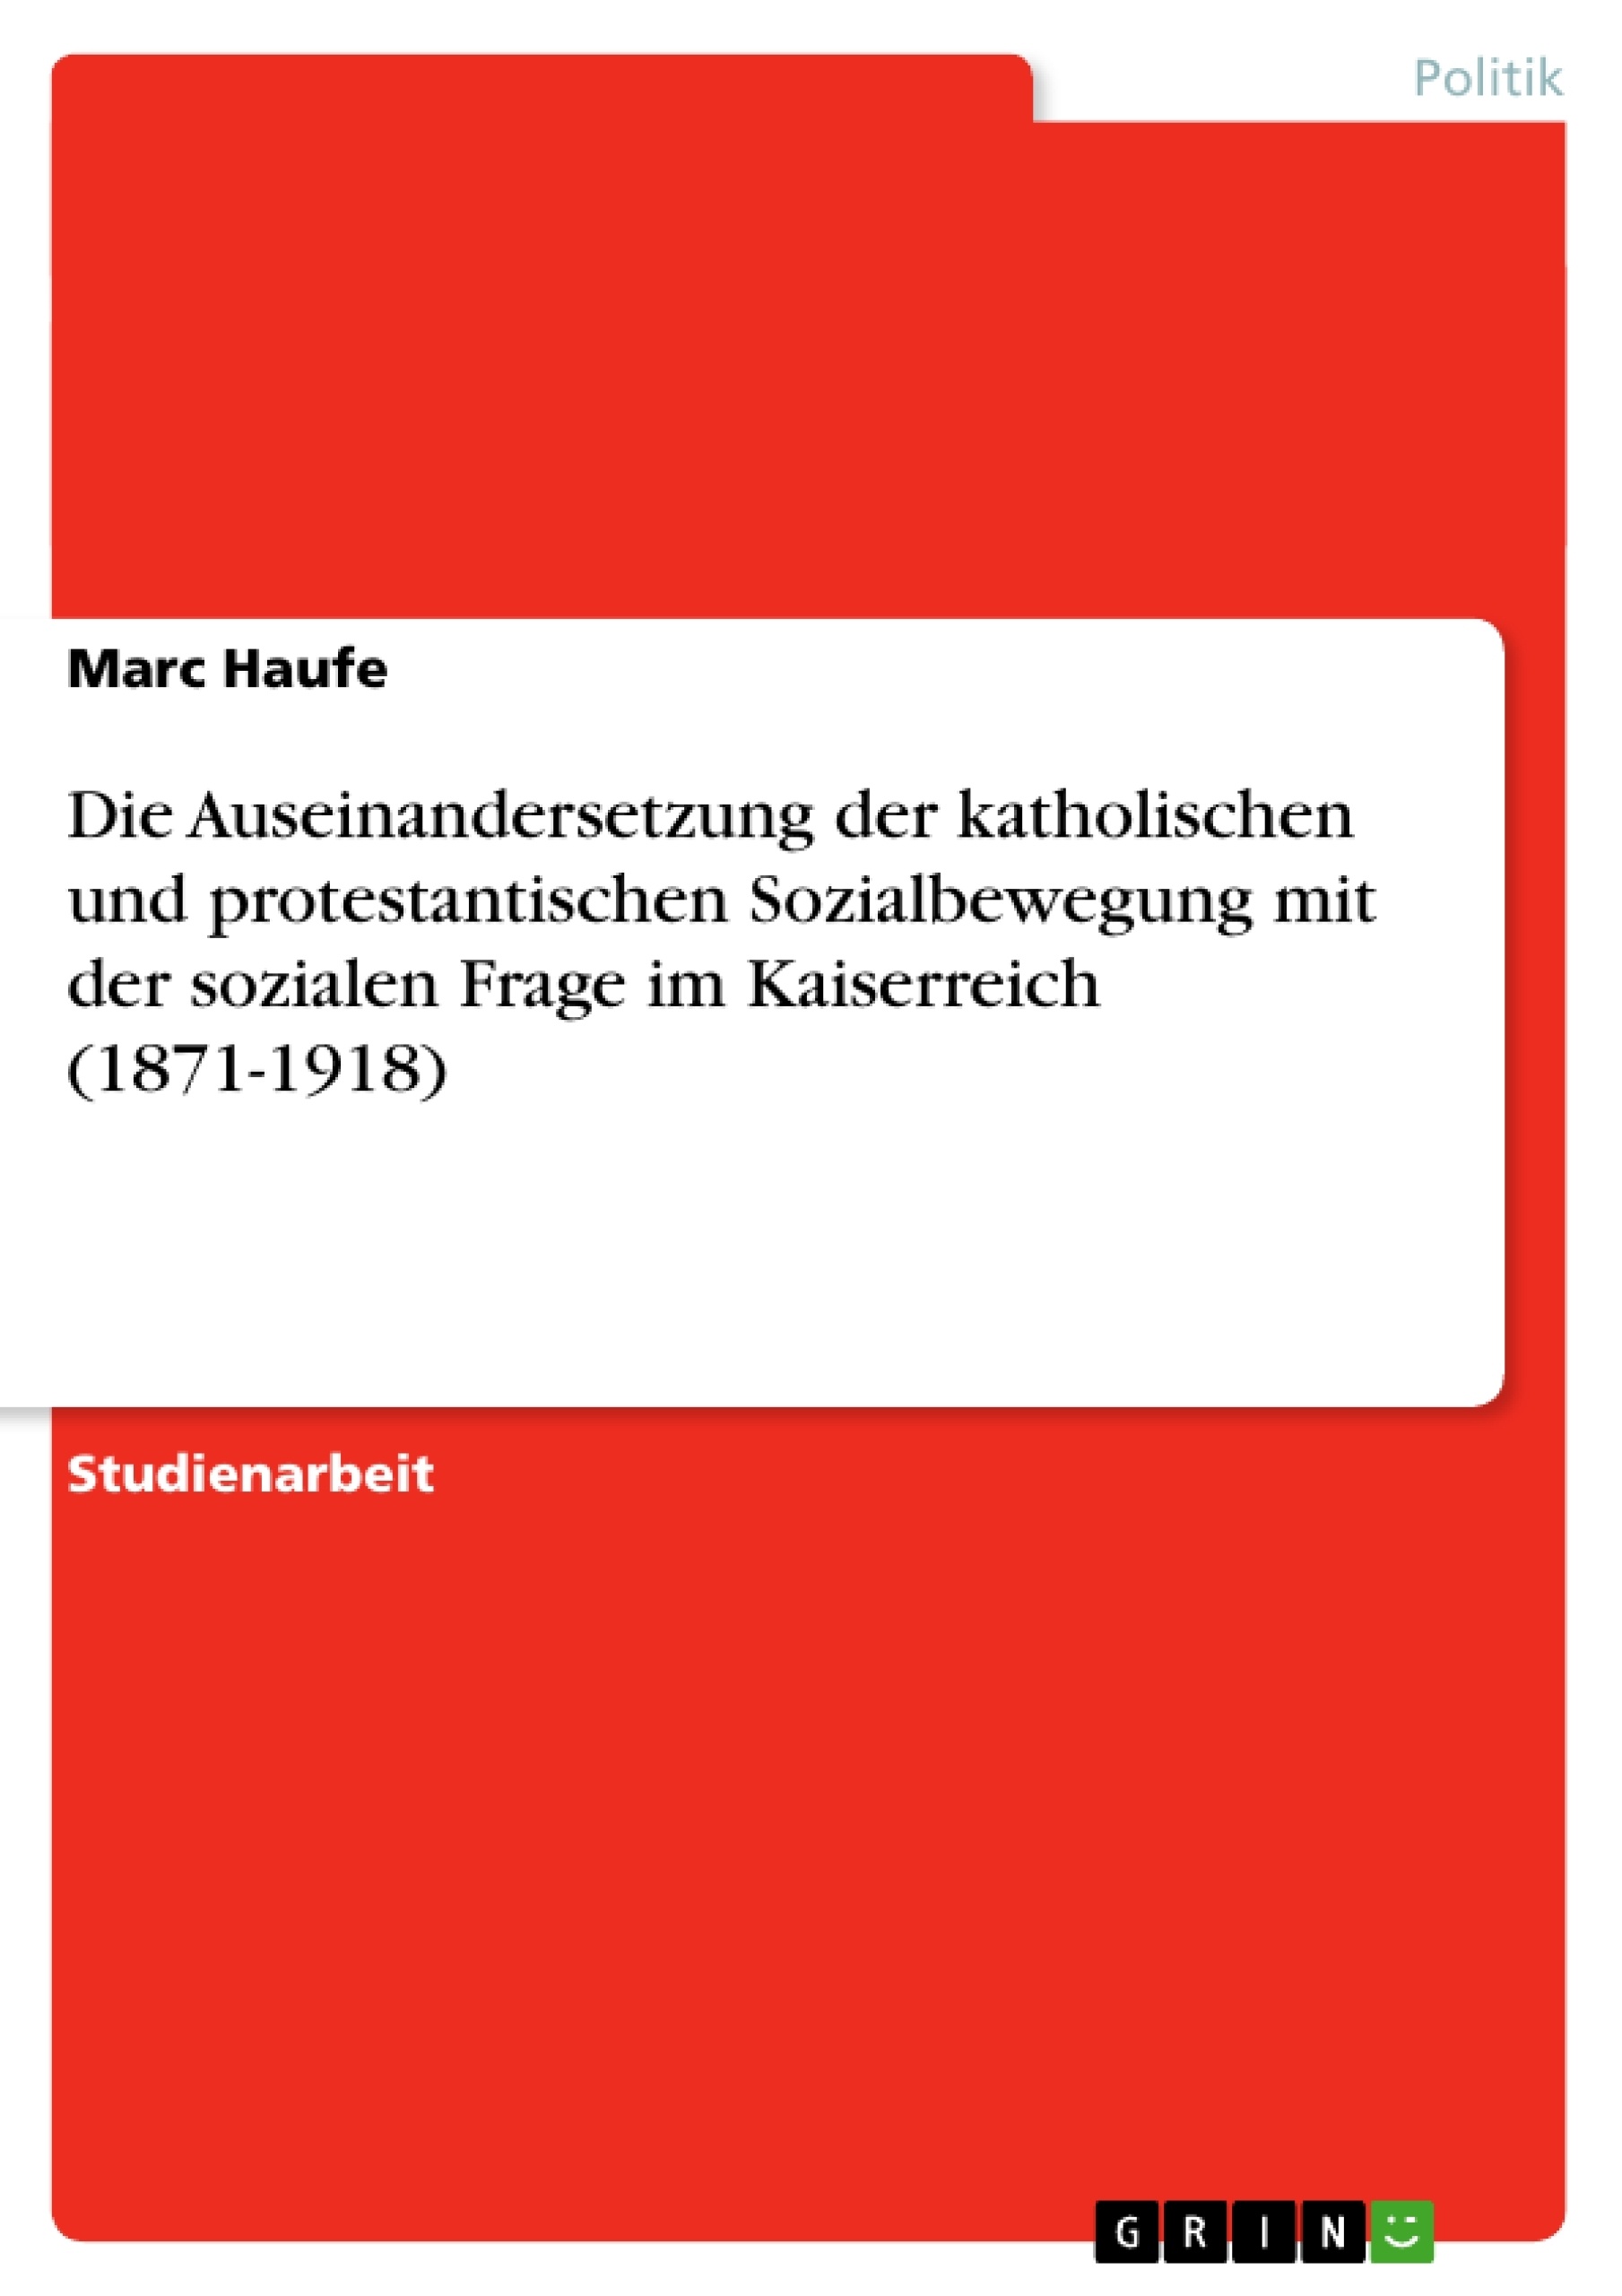 Titre: Die Auseinandersetzung der katholischen und protestantischen Sozialbewegung mit der sozialen Frage im Kaiserreich (1871-1918)